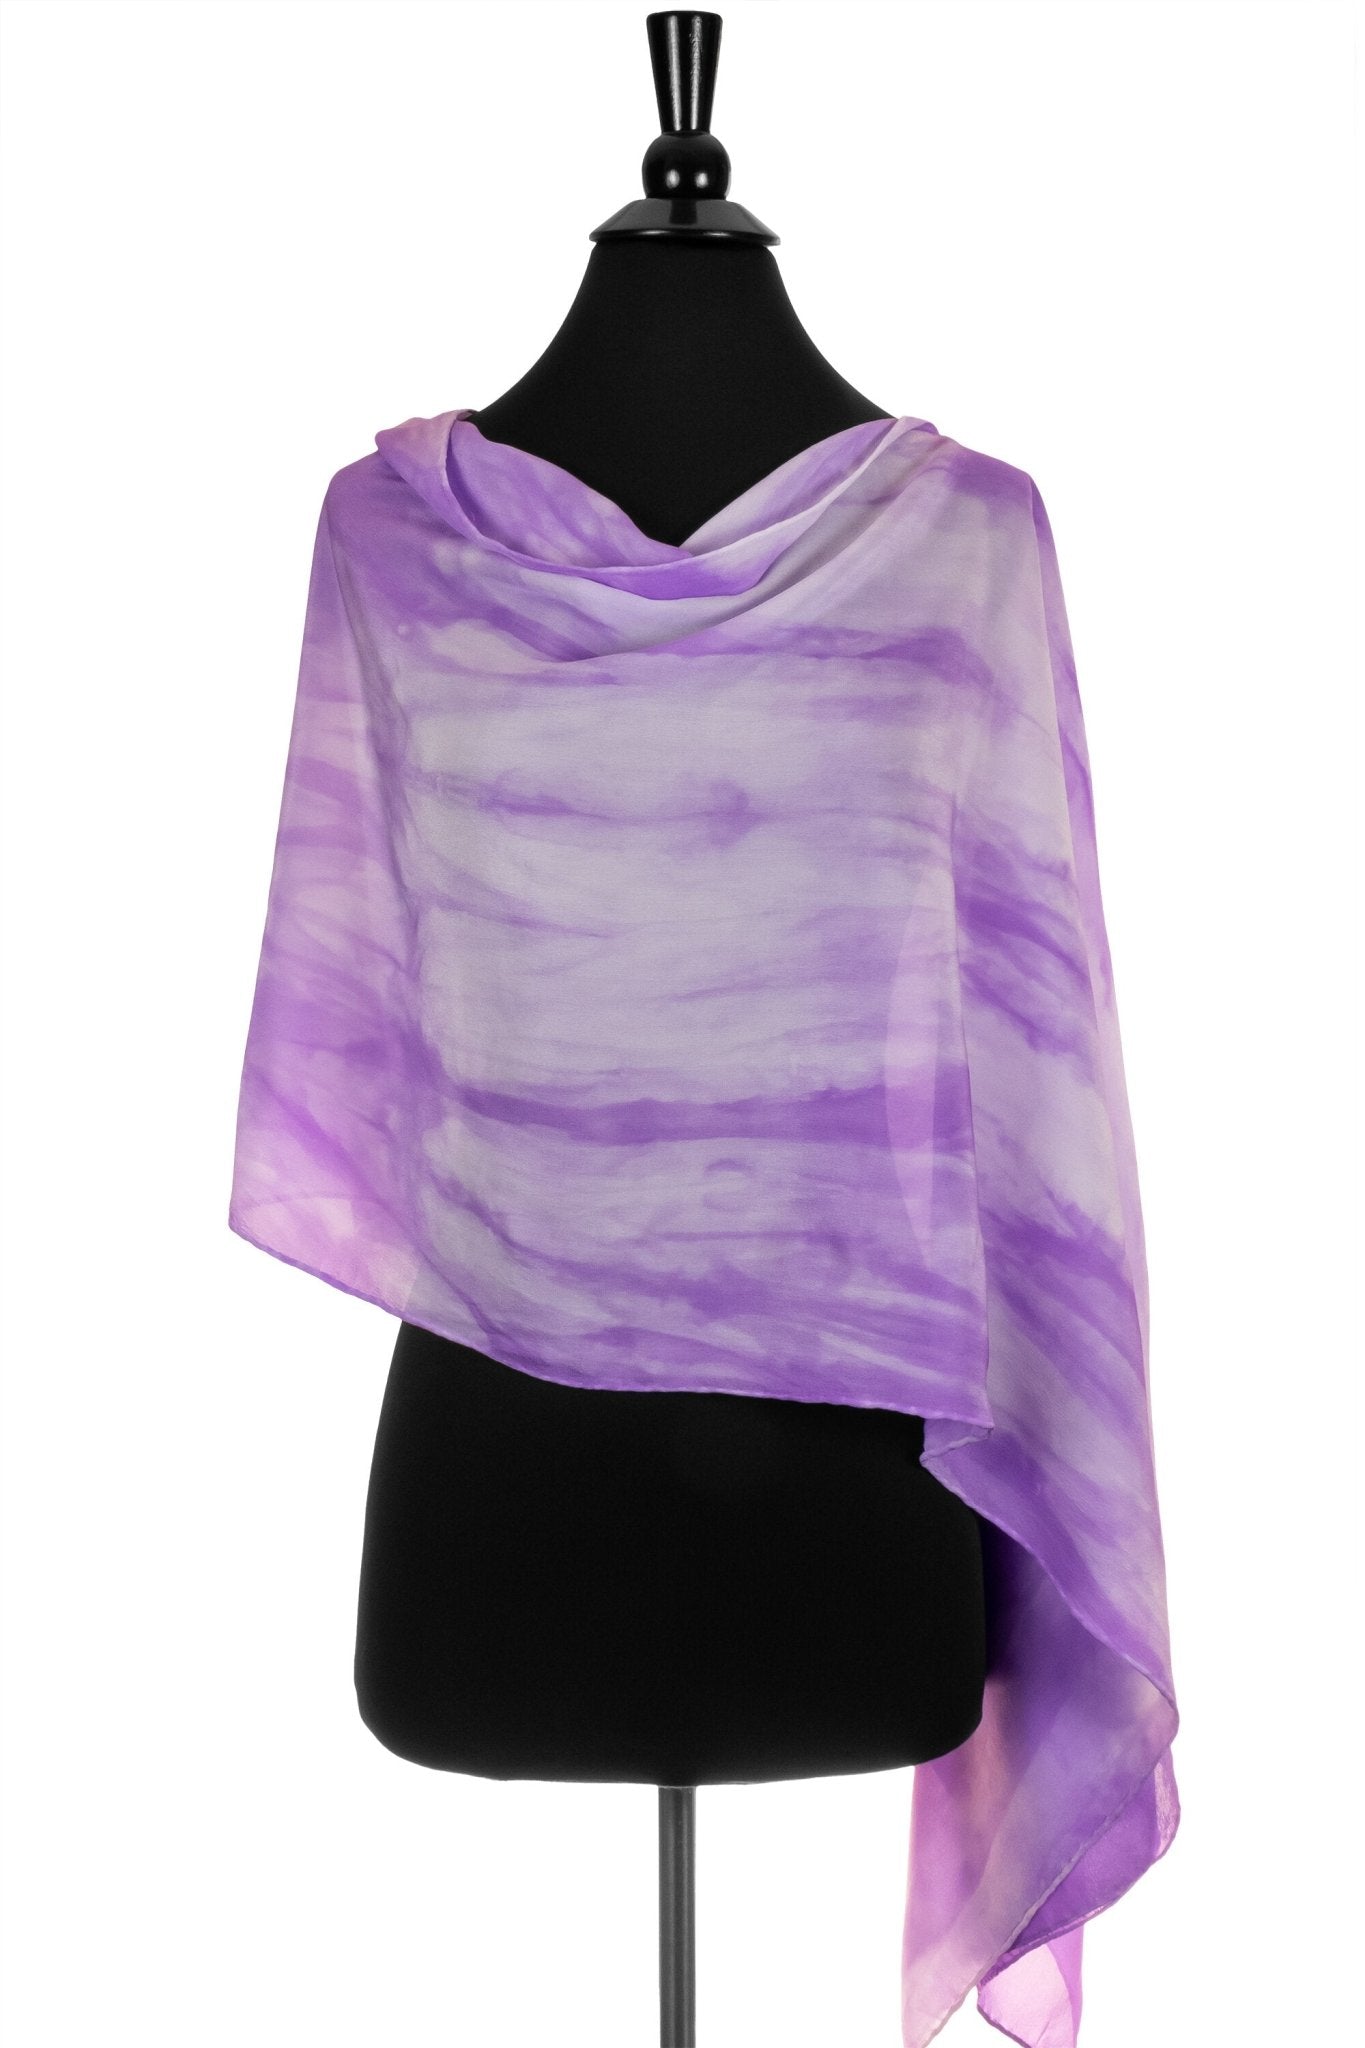 Silk 2-in-1 Drape in Purple and White - Sherri O Designs